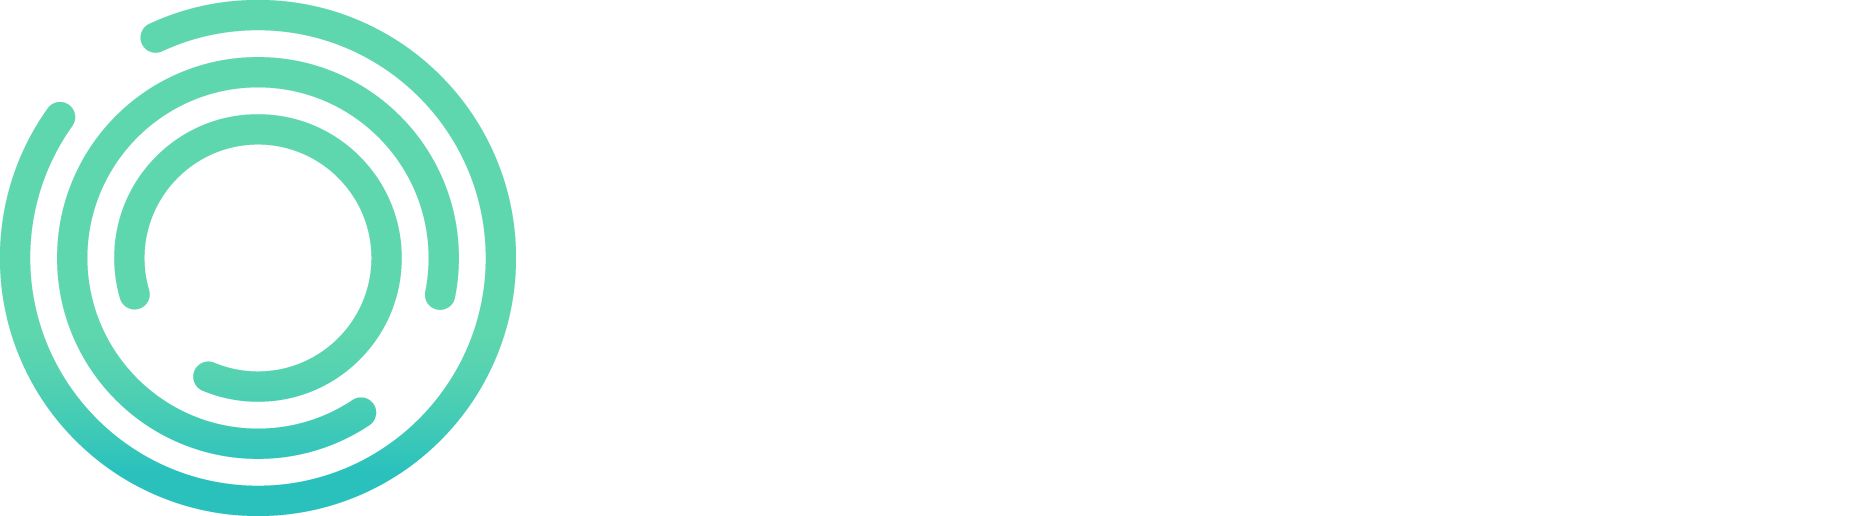 Bitcoin Bonanza - REGISTER FOR FREE TODAY